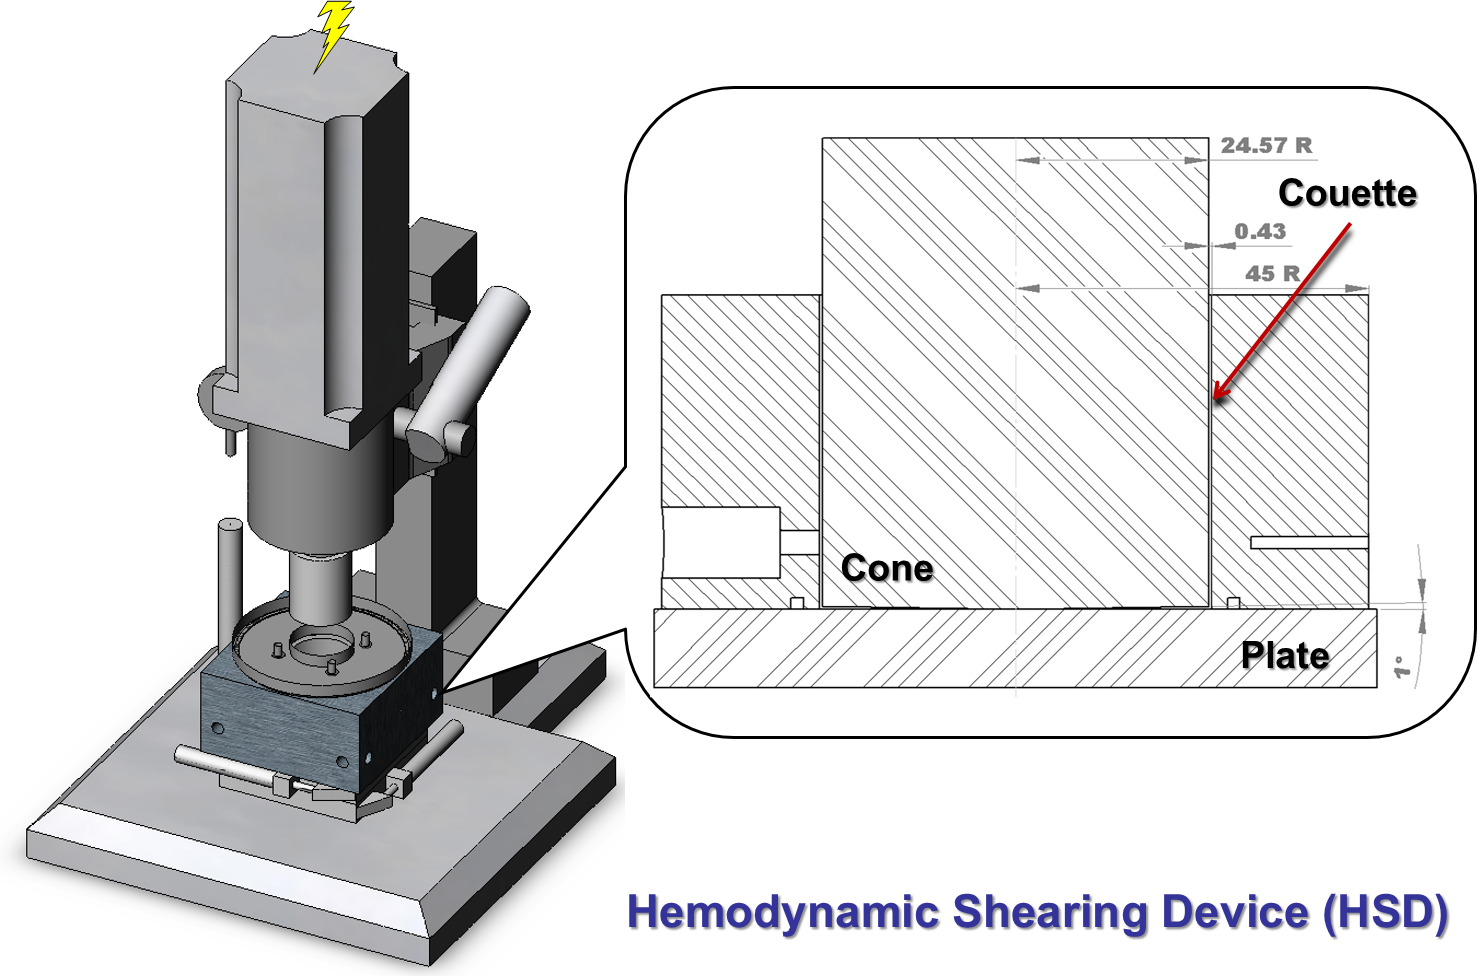 Hemodynamic Shearing Device